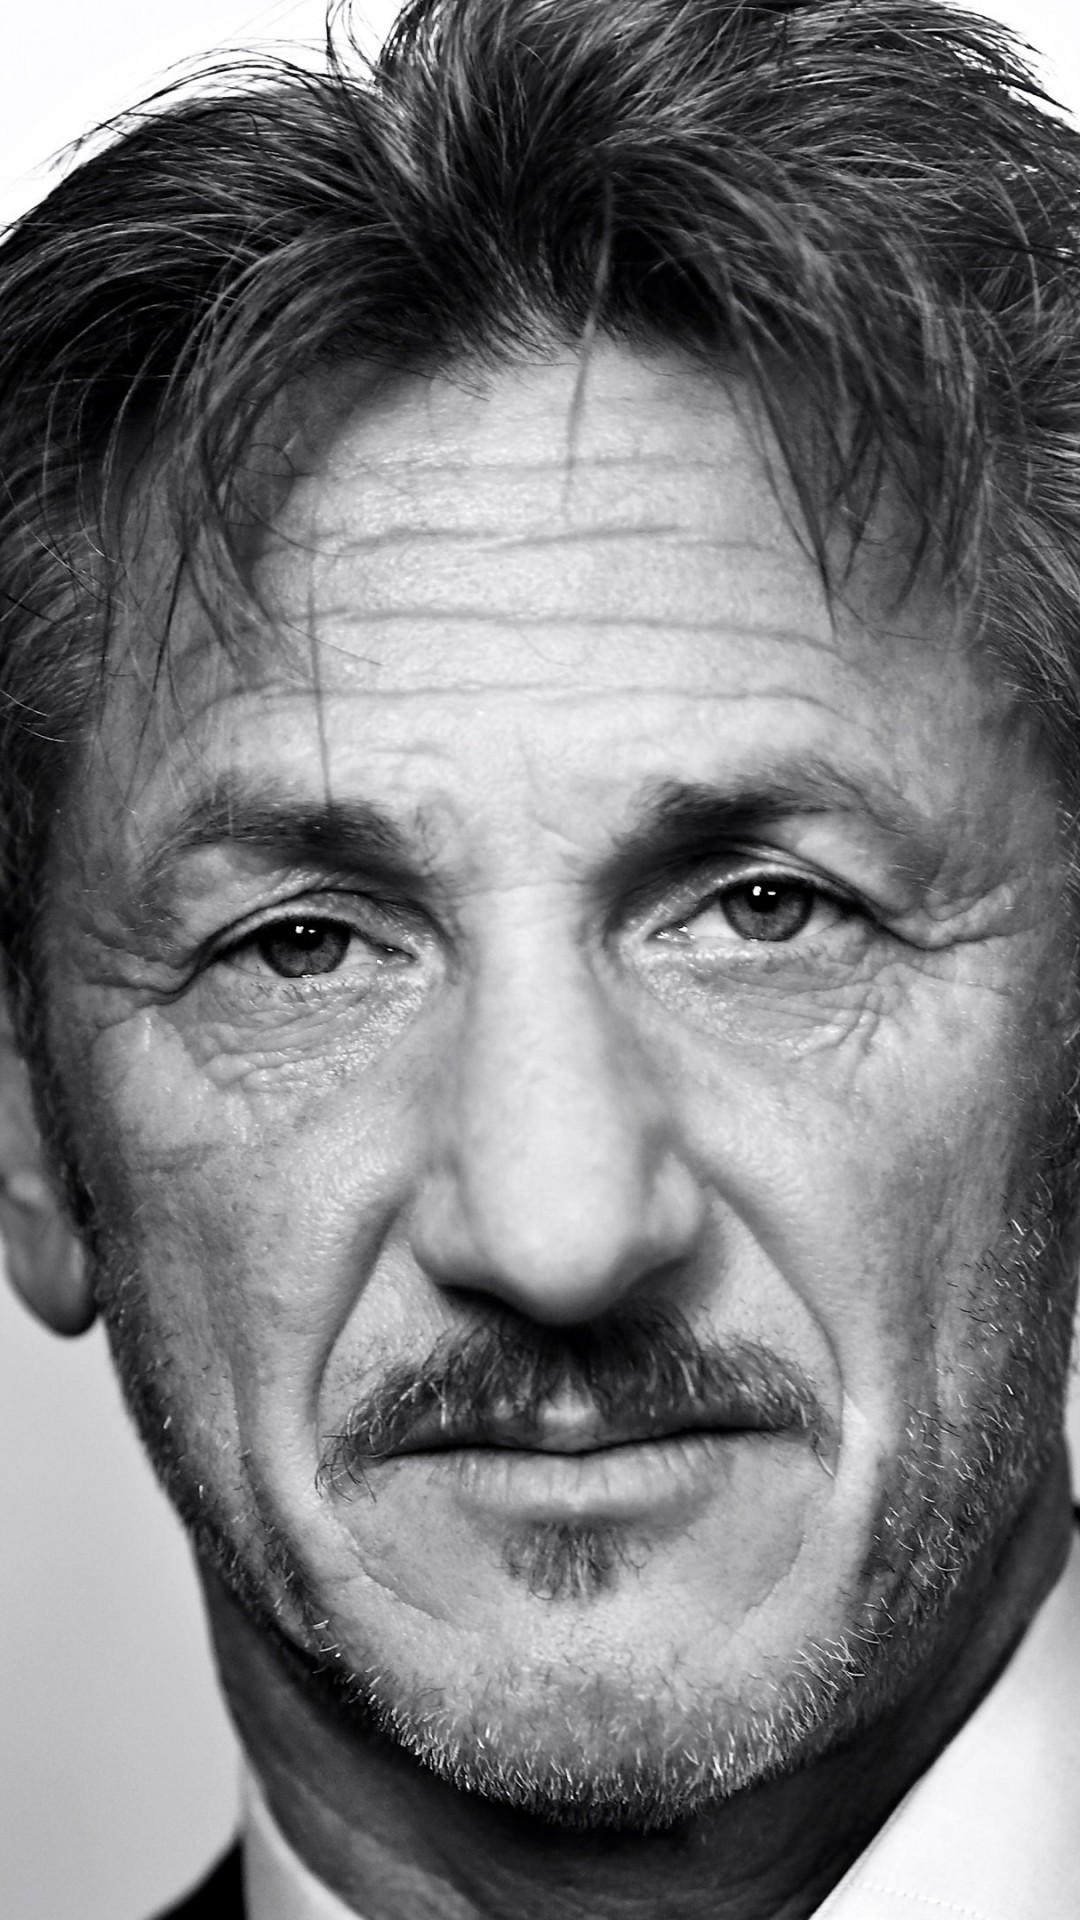 Sean Penn Portrait in Black & White Wallpaper for LG G2